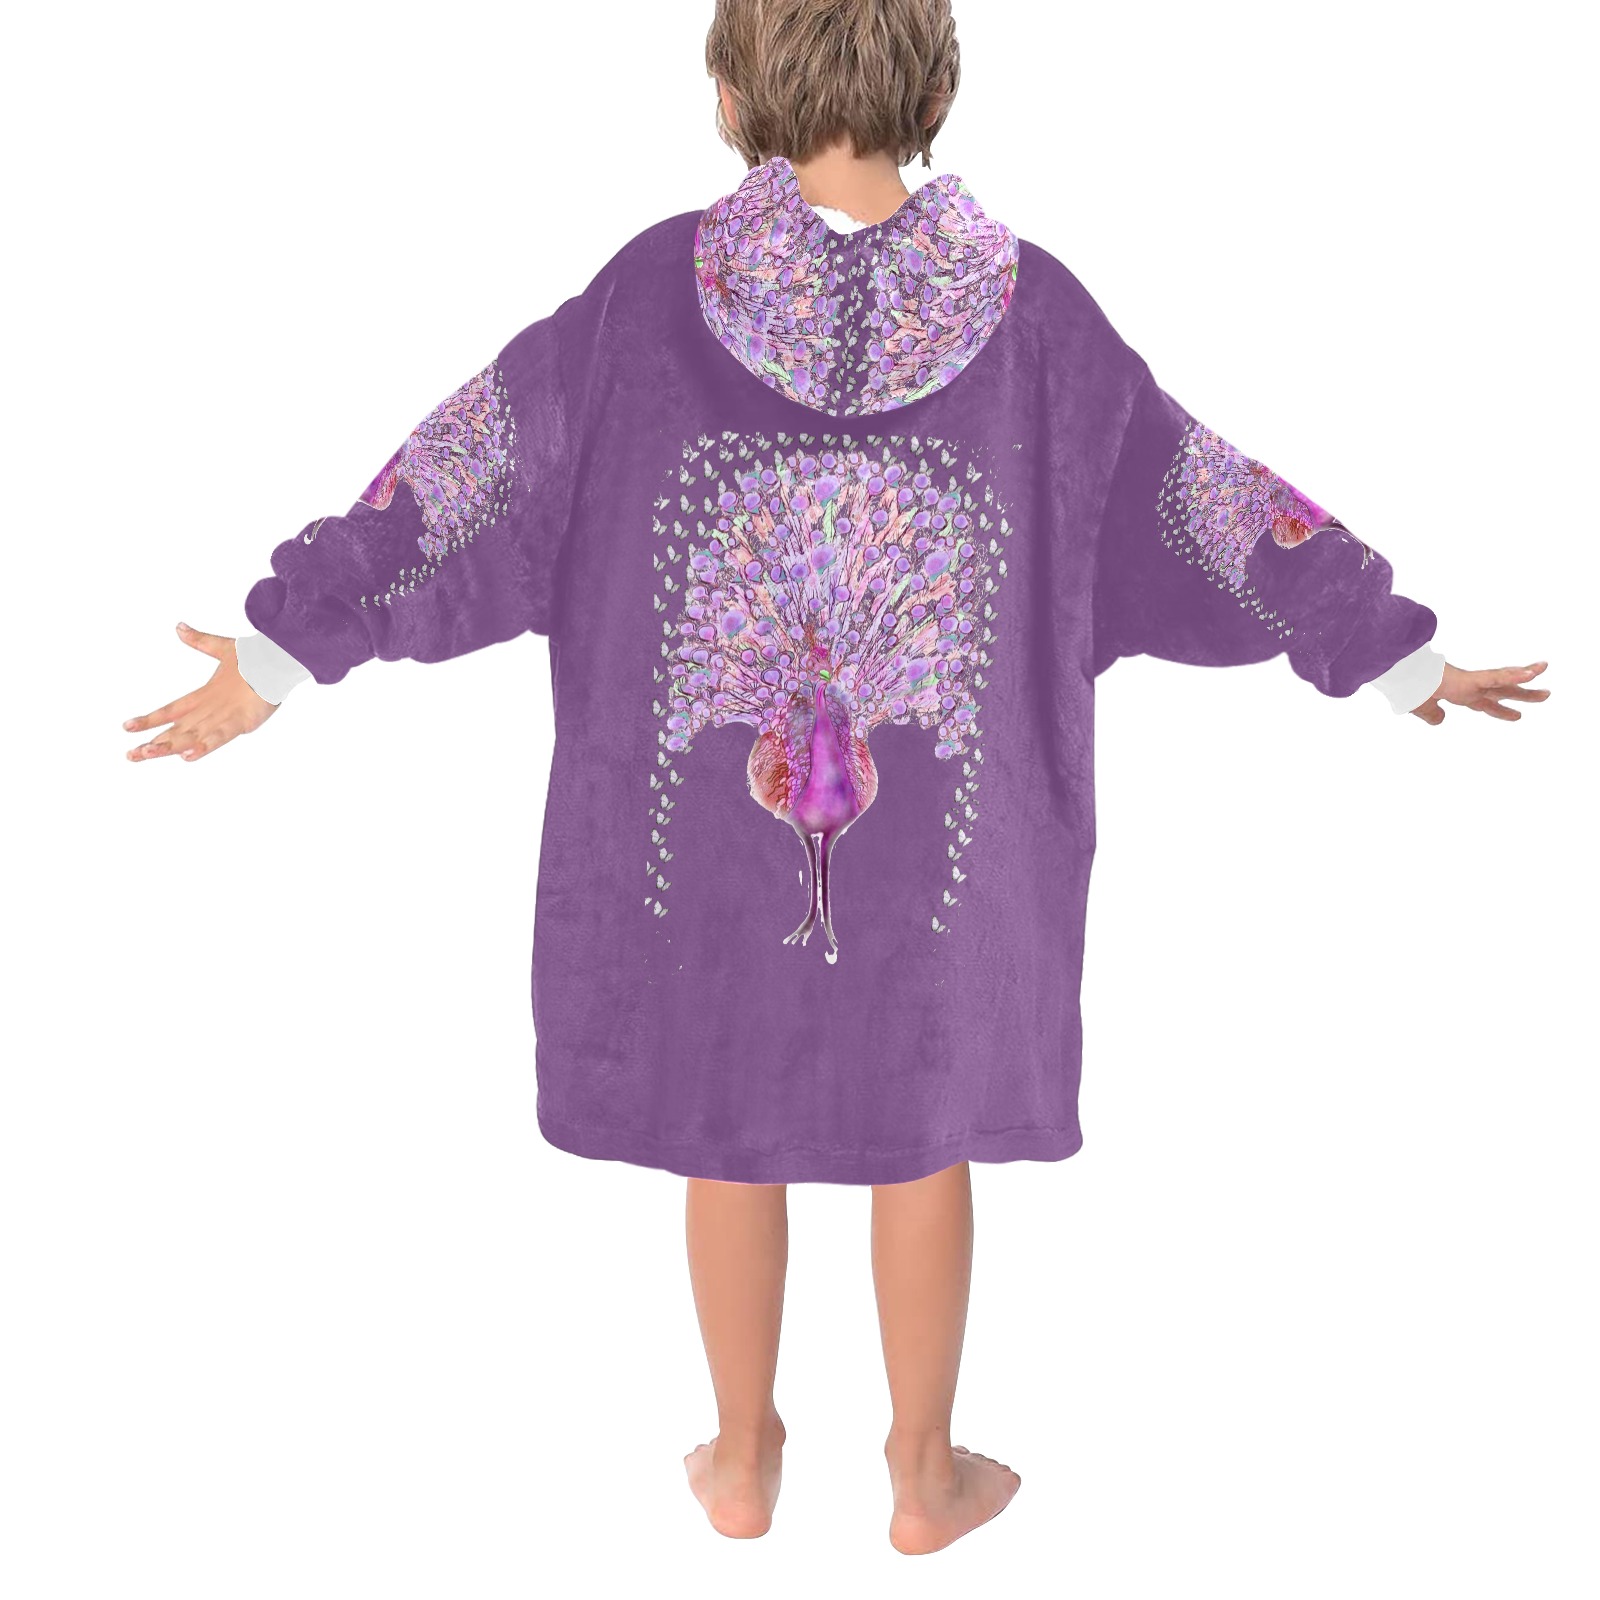 peacocq purple Blanket Hoodie for Kids